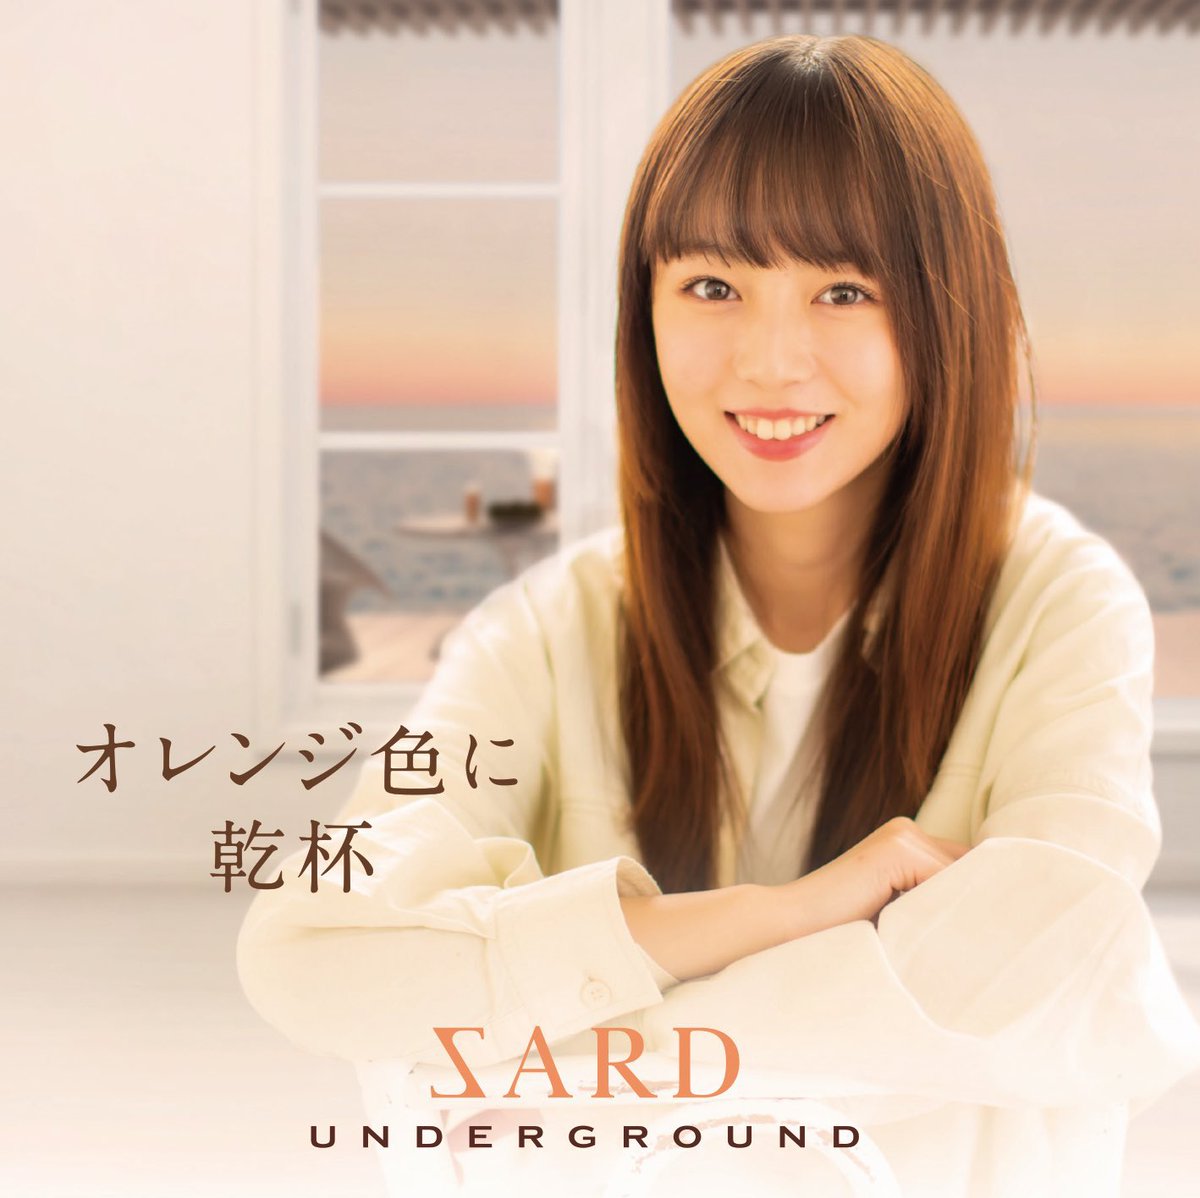 Cover art for『SARD UNDERGROUND - あの夏の恋は眩しくて』from the release『Orange Iro ni Kanpai